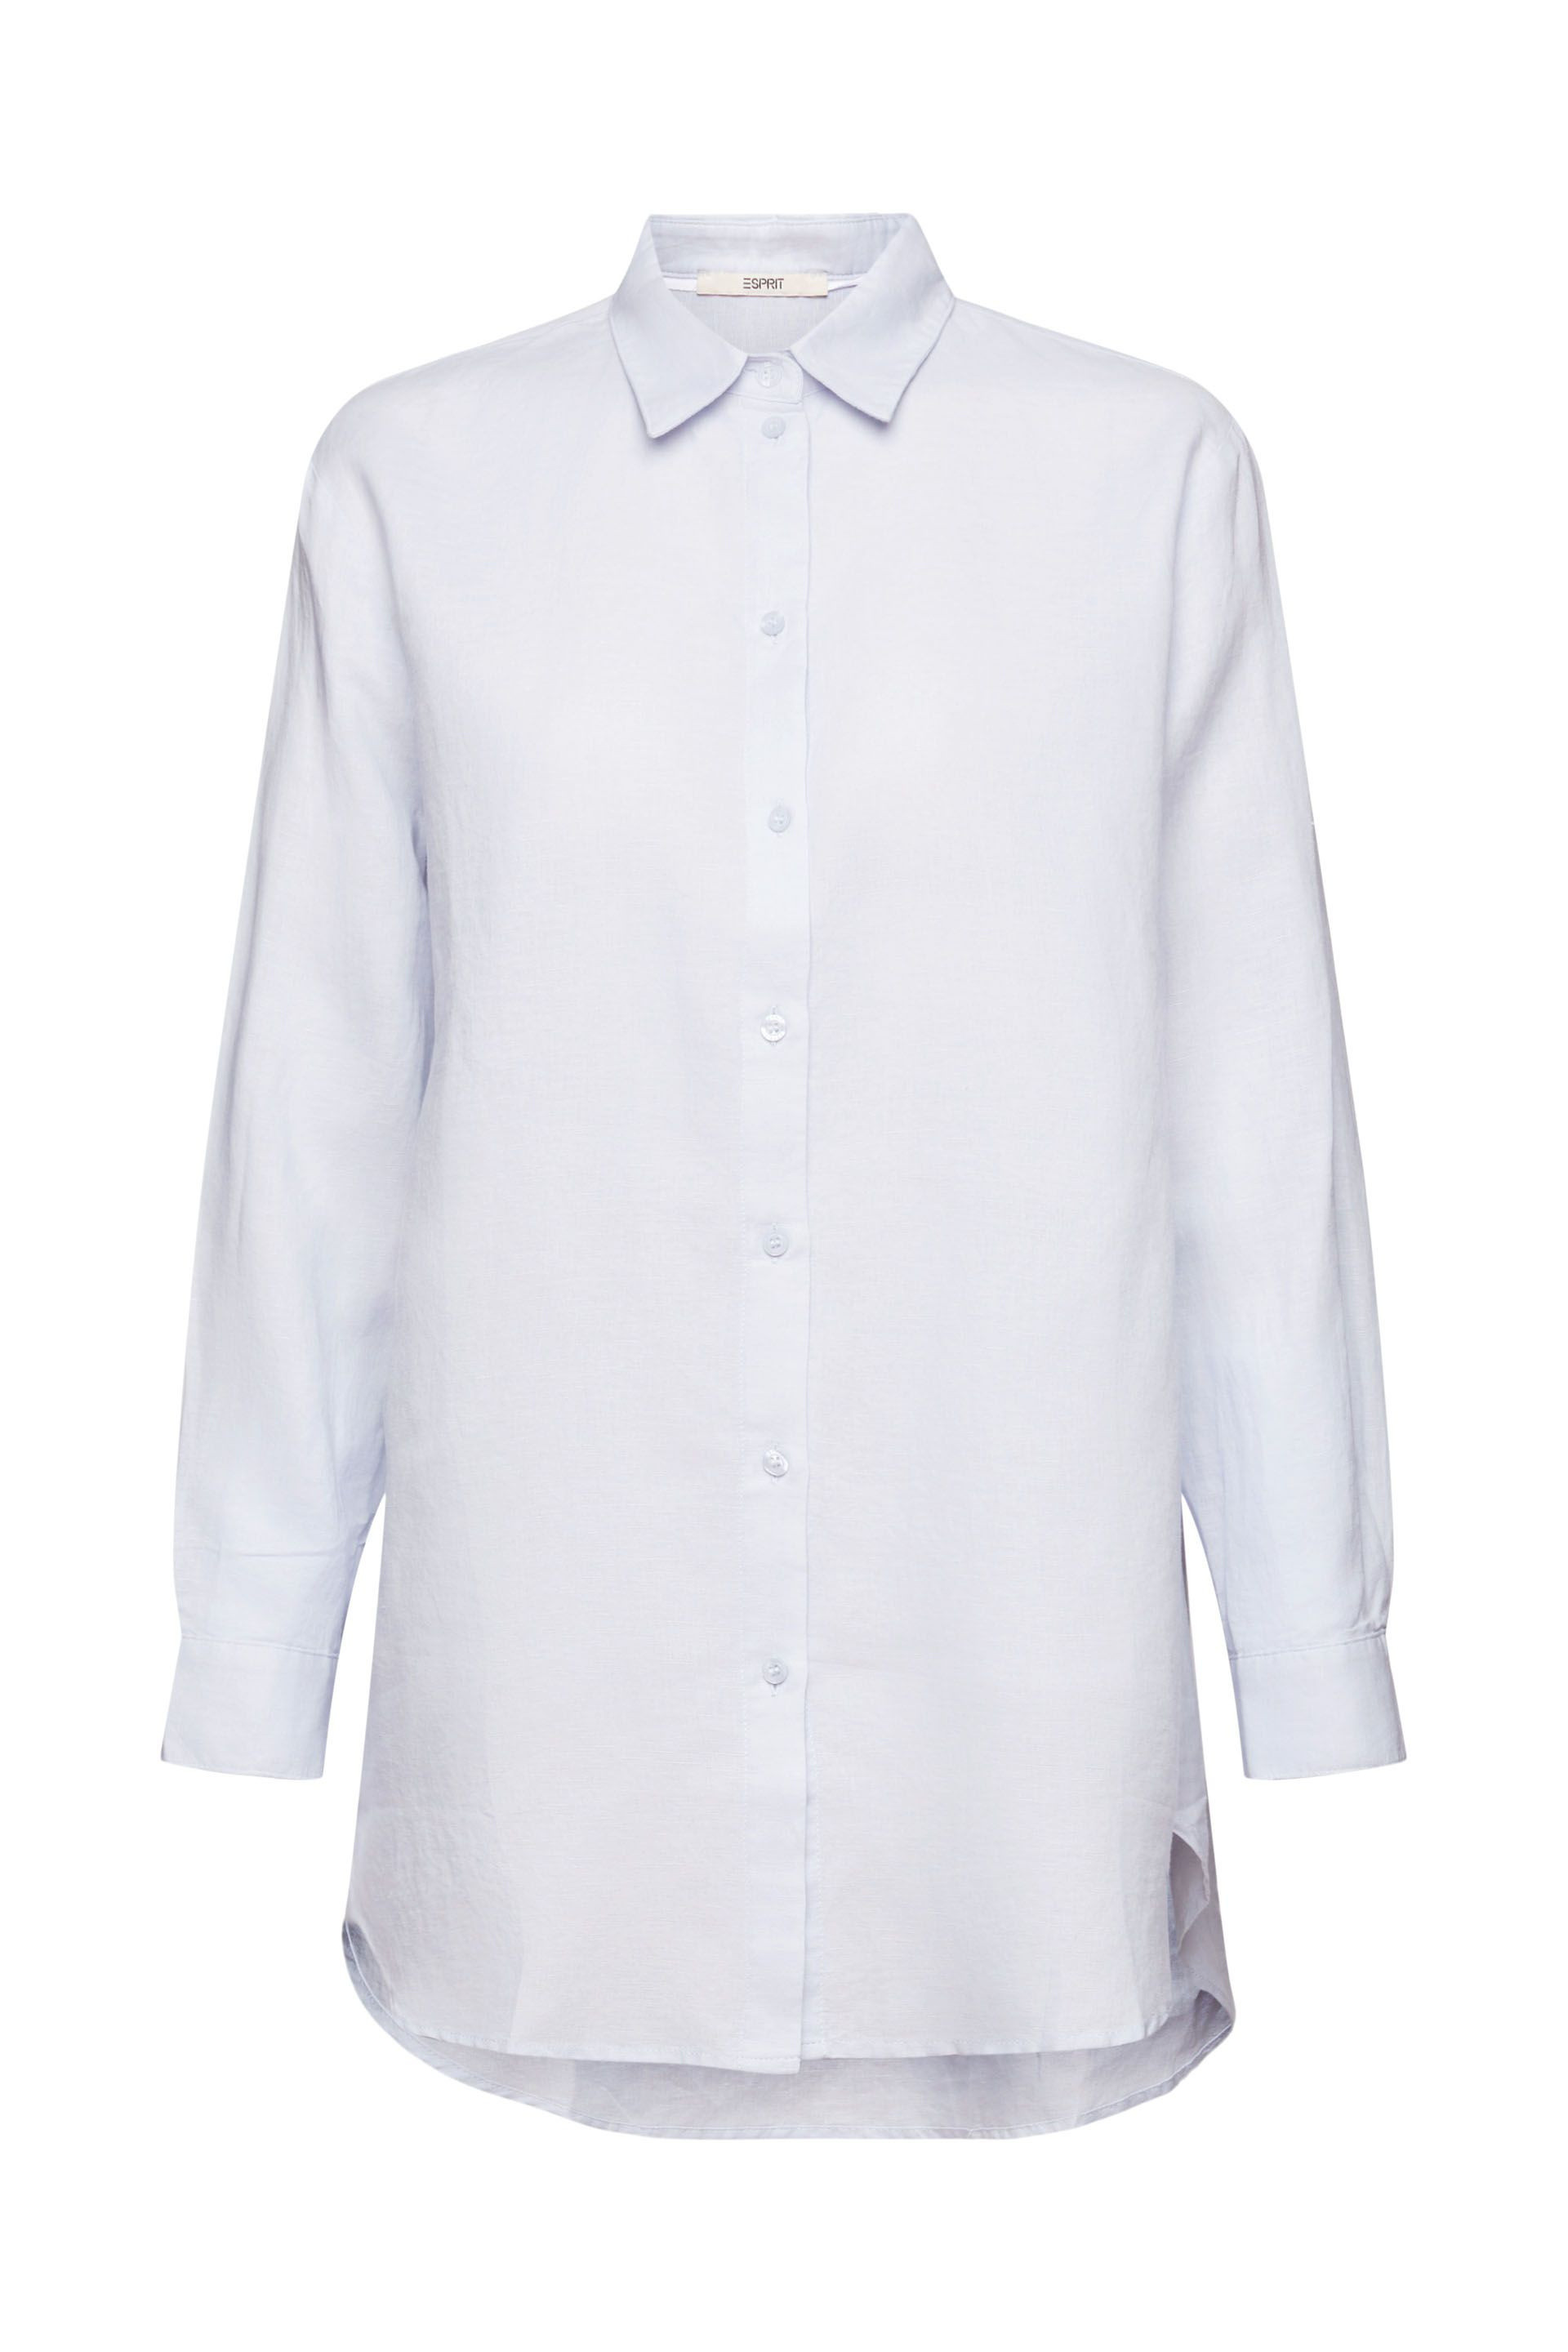 Esprit - Linen blend blouse, Light Blue, large image number 0